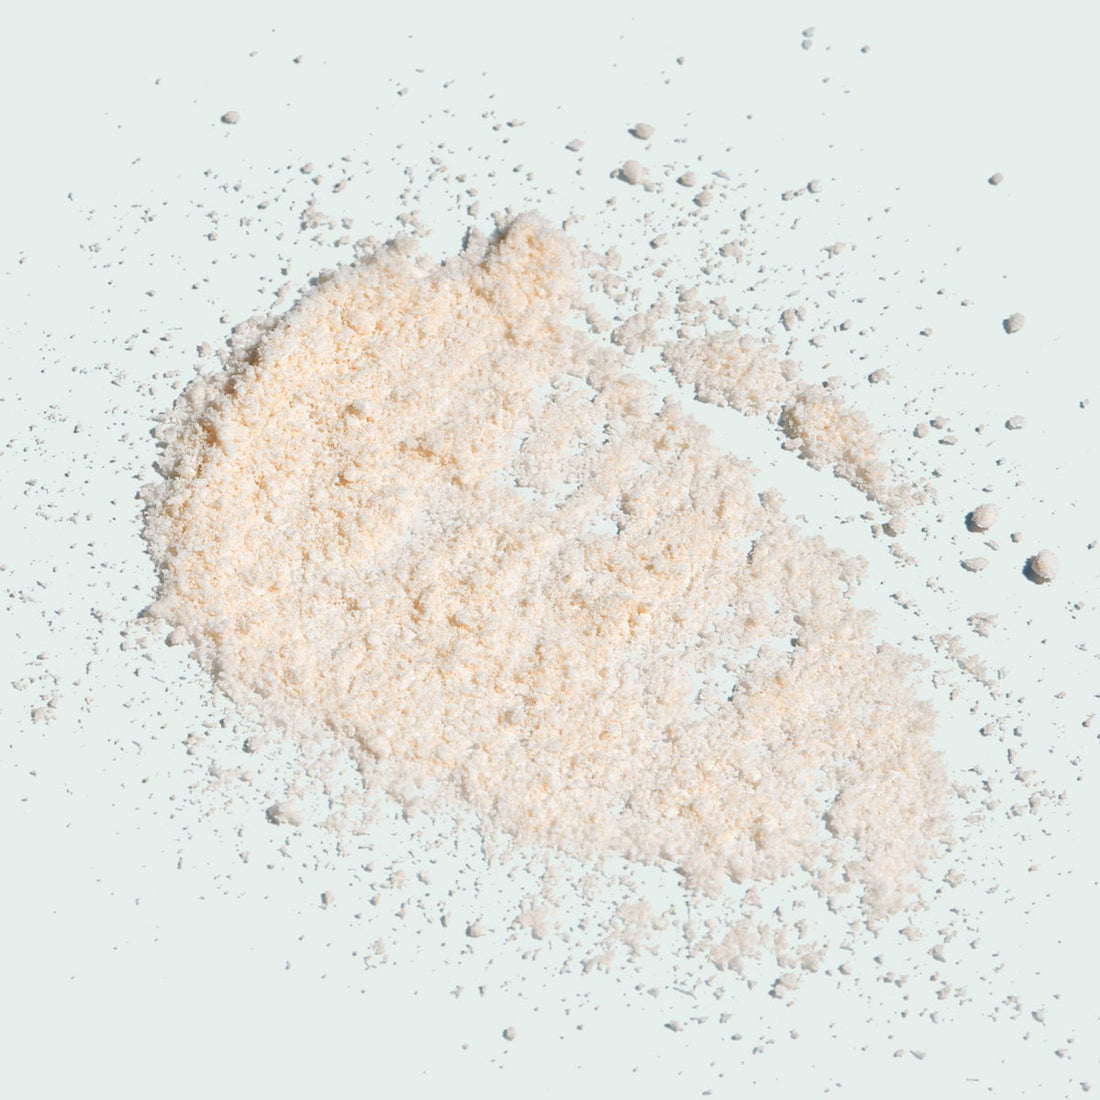 ILUMA Brightening Exfoliating Powder